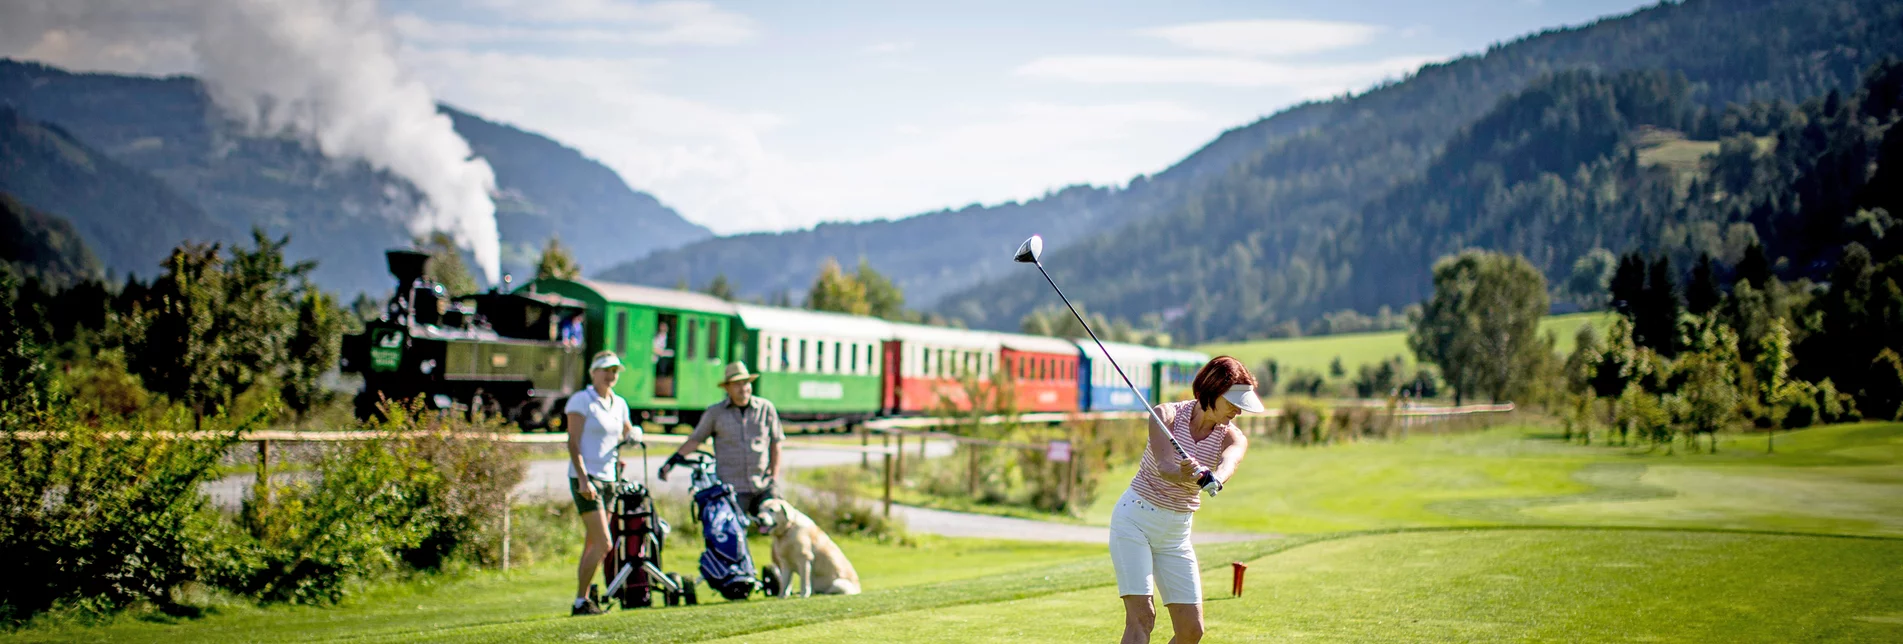 Golfspielen am Golfplatz Murau-Kreischberg | © TVB Murau |  Tom Lamm